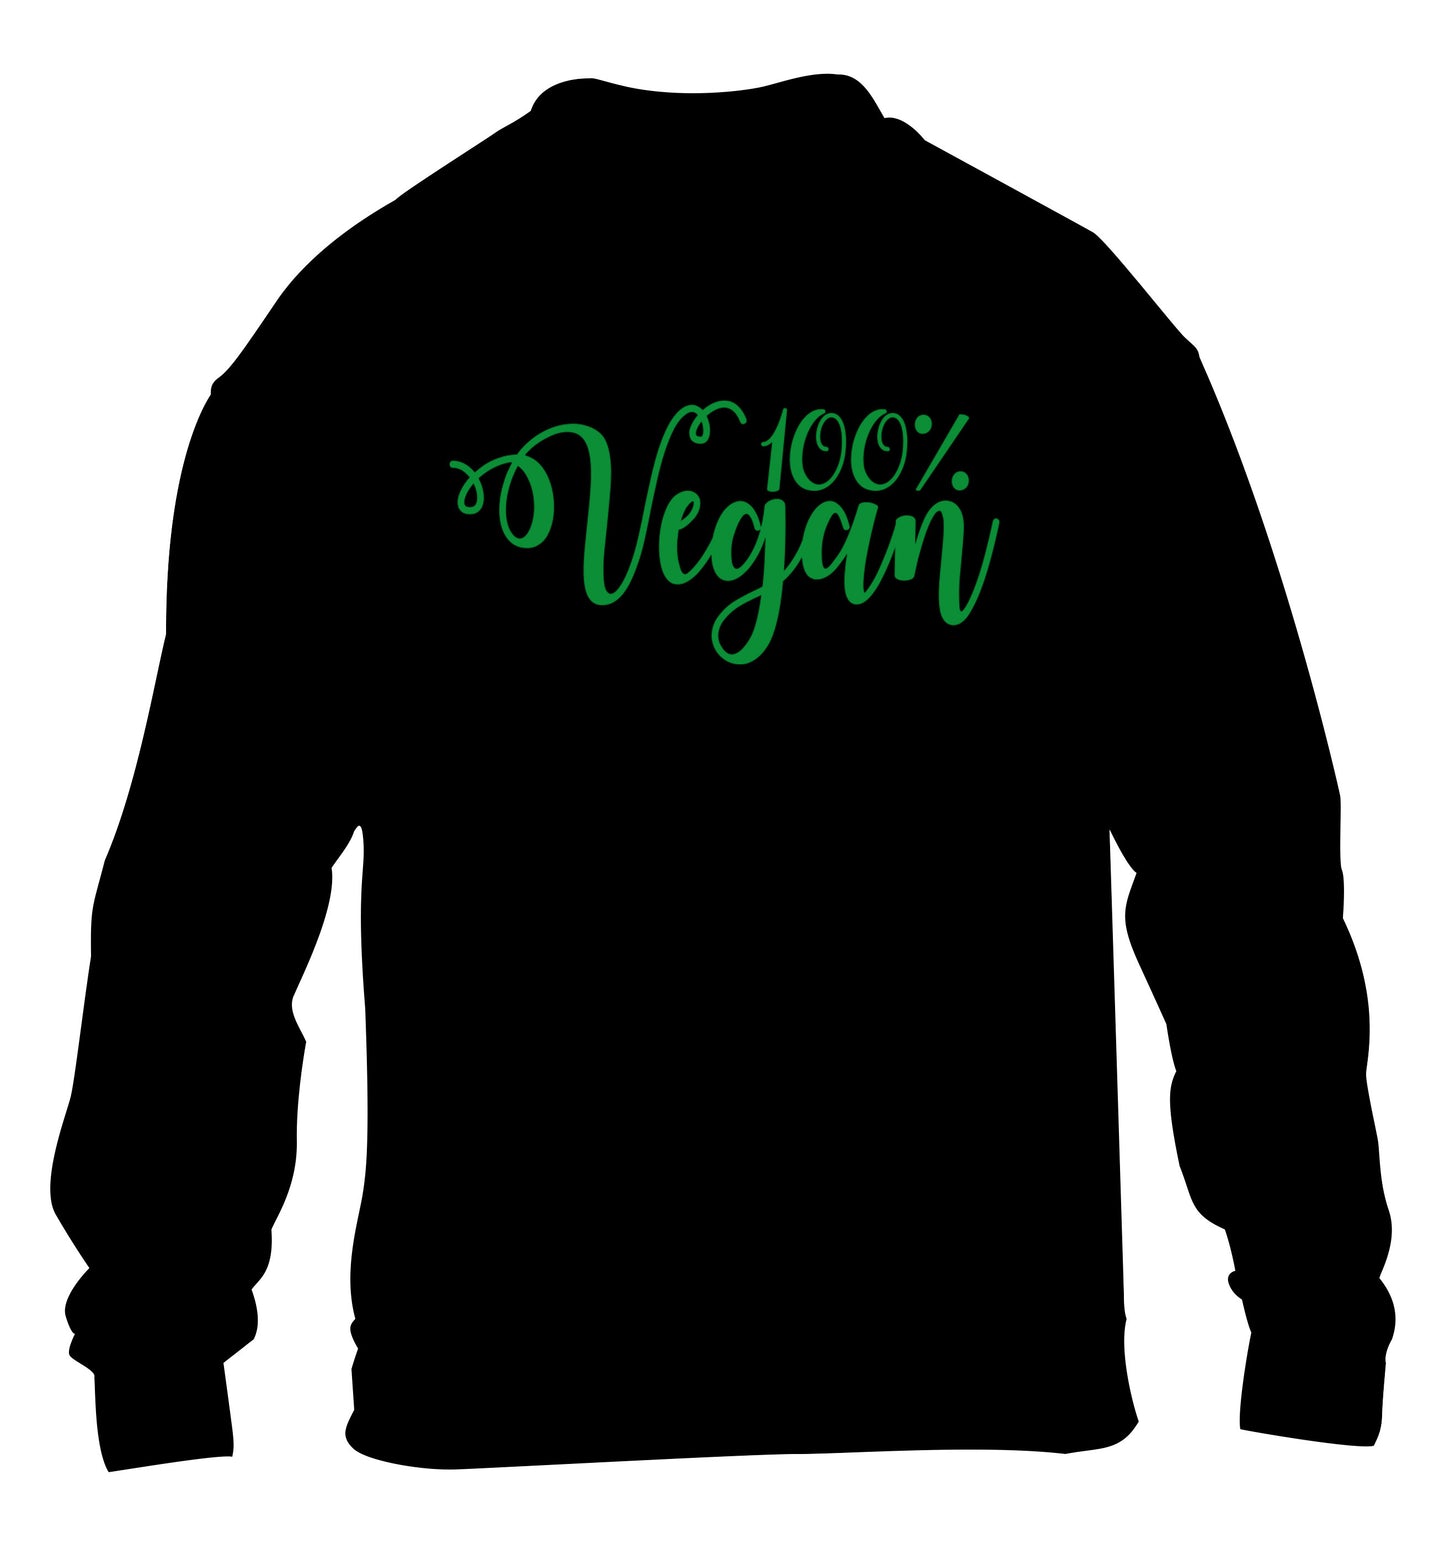 100% Vegan children's black sweater 12-14 Years